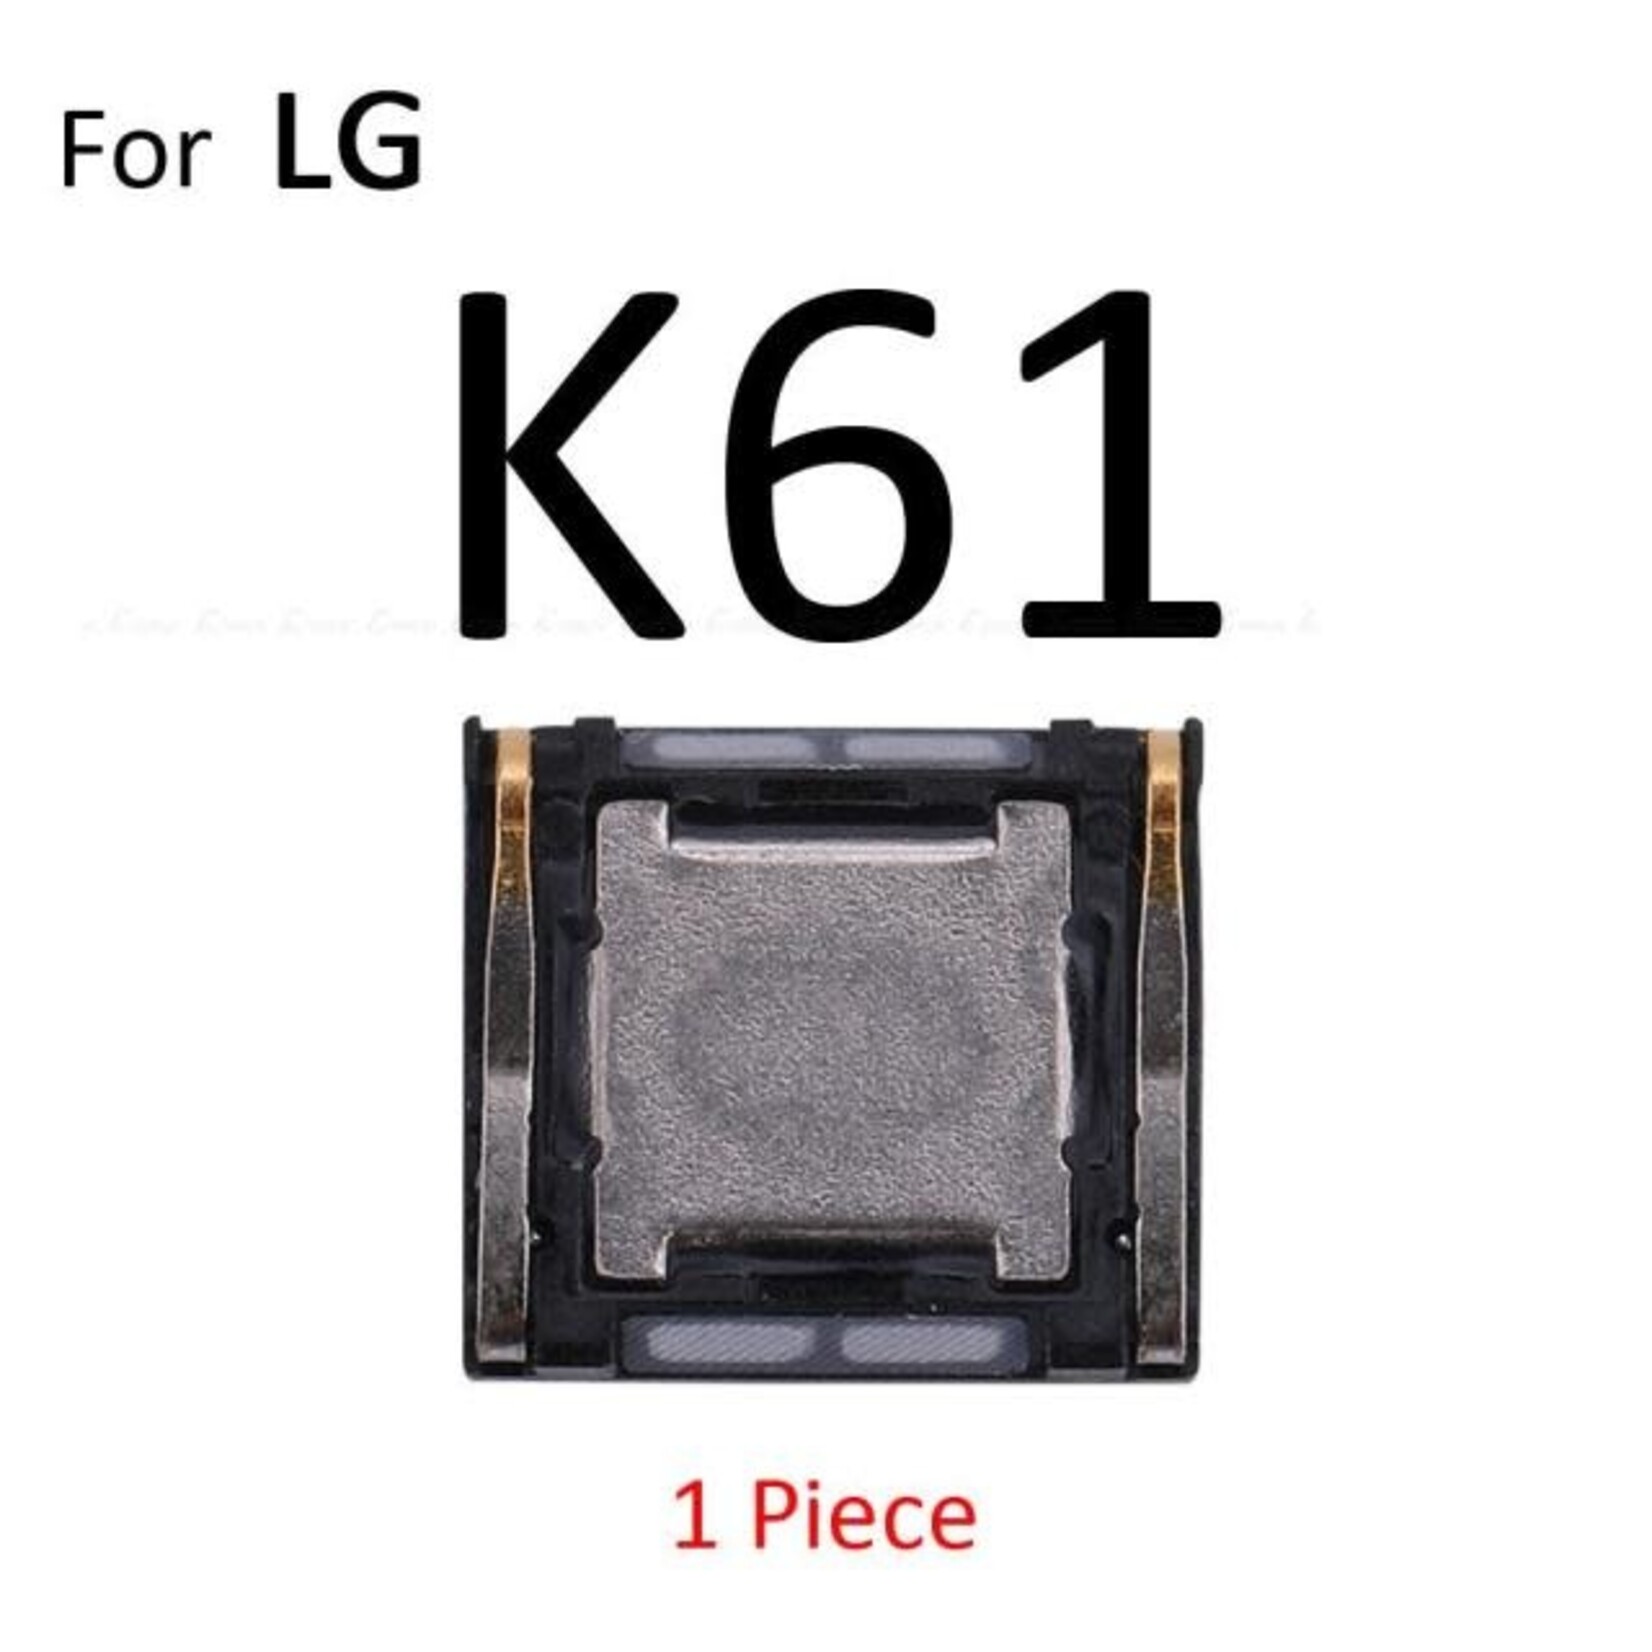 LG Ear speaker for LG K61 (LG-DH40)